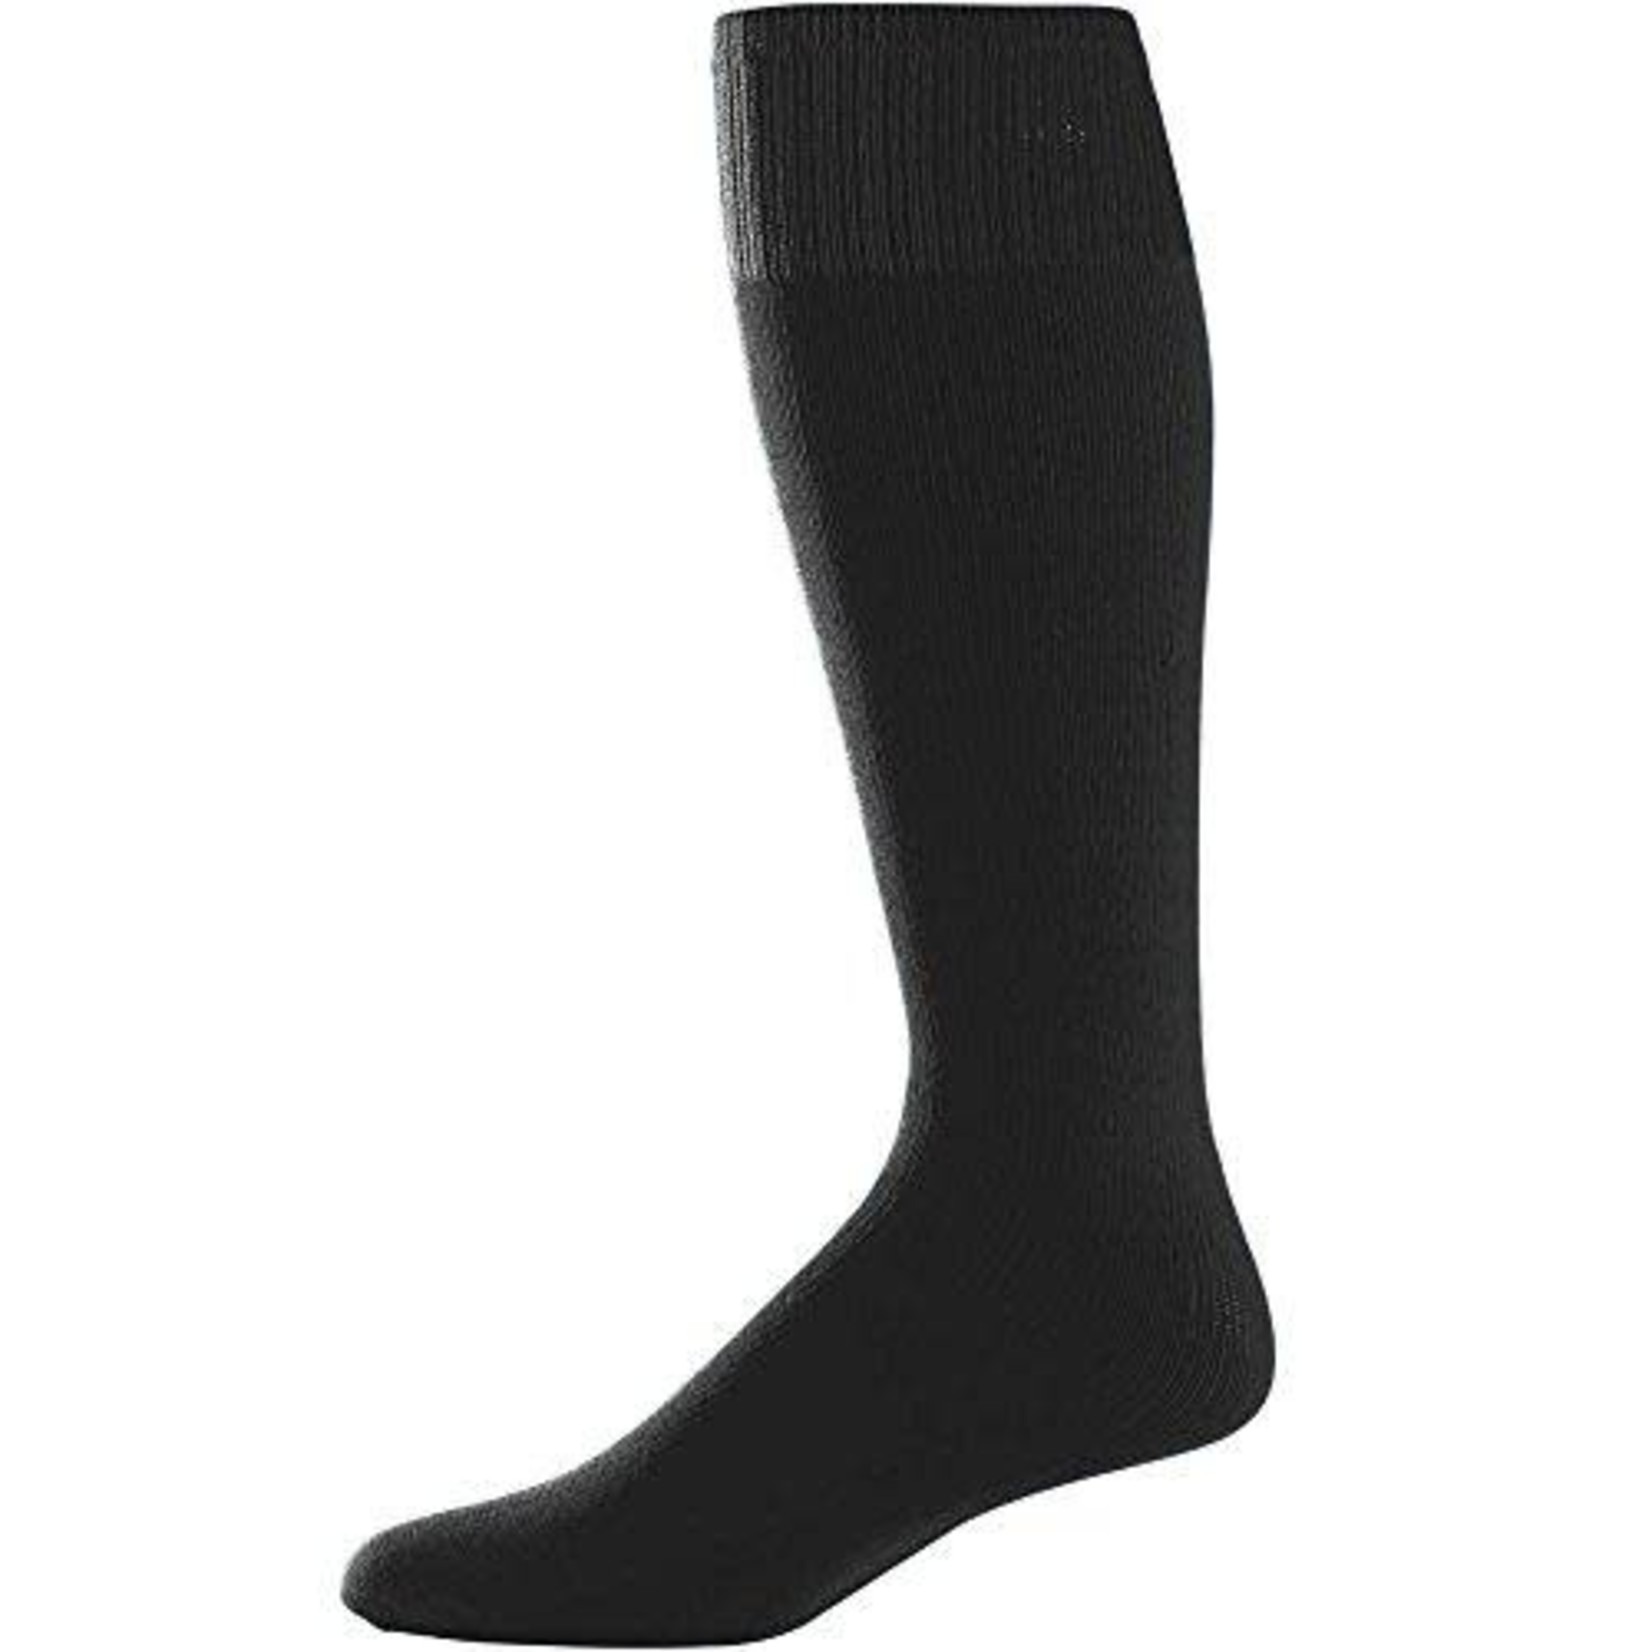 Augusta Augusta 6025 - Game Socks